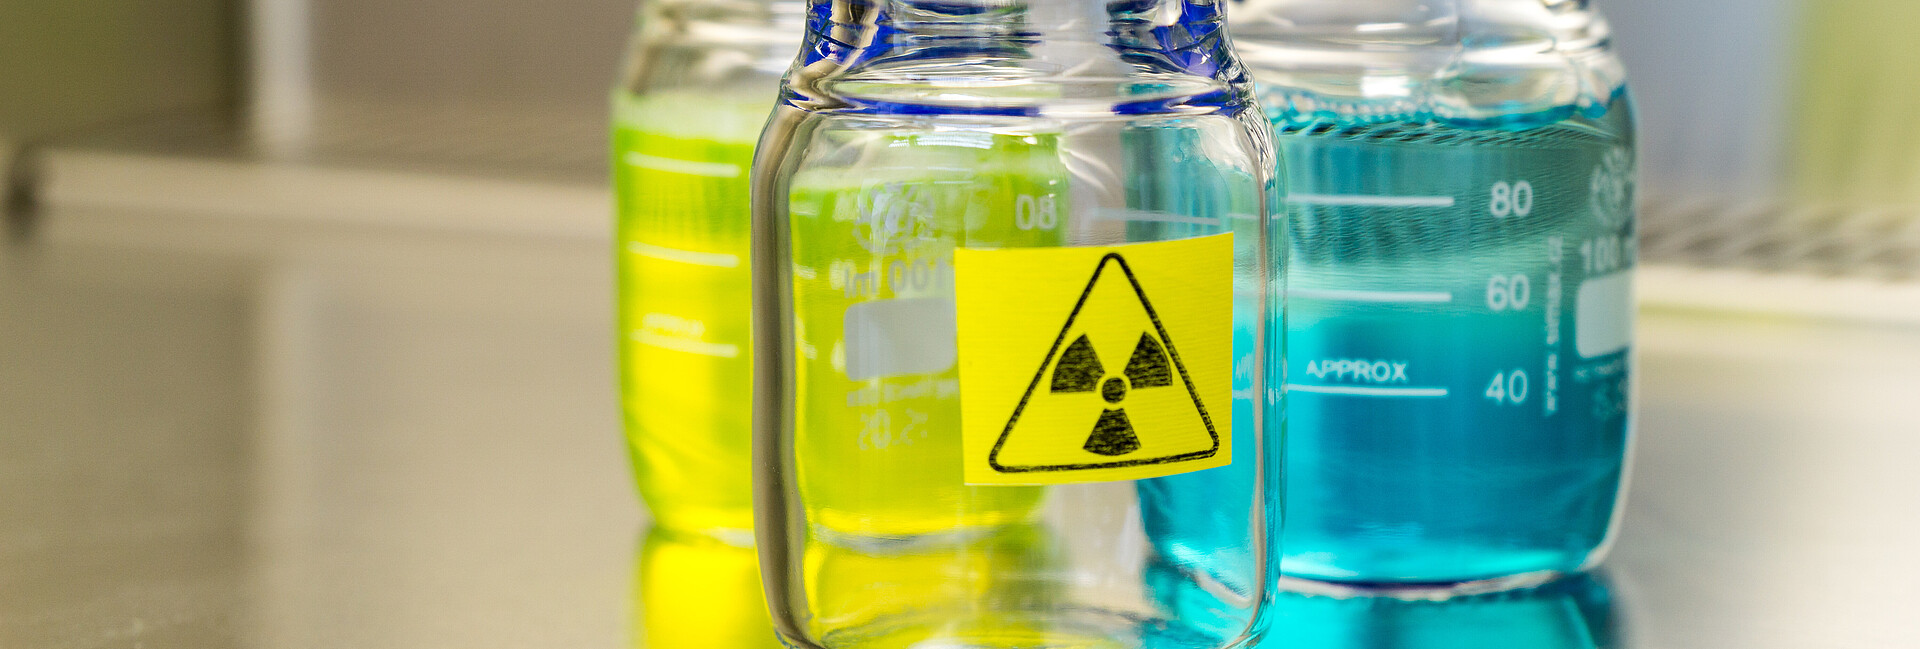 Bild zeigt radioaktive Proben in Laborflaschen